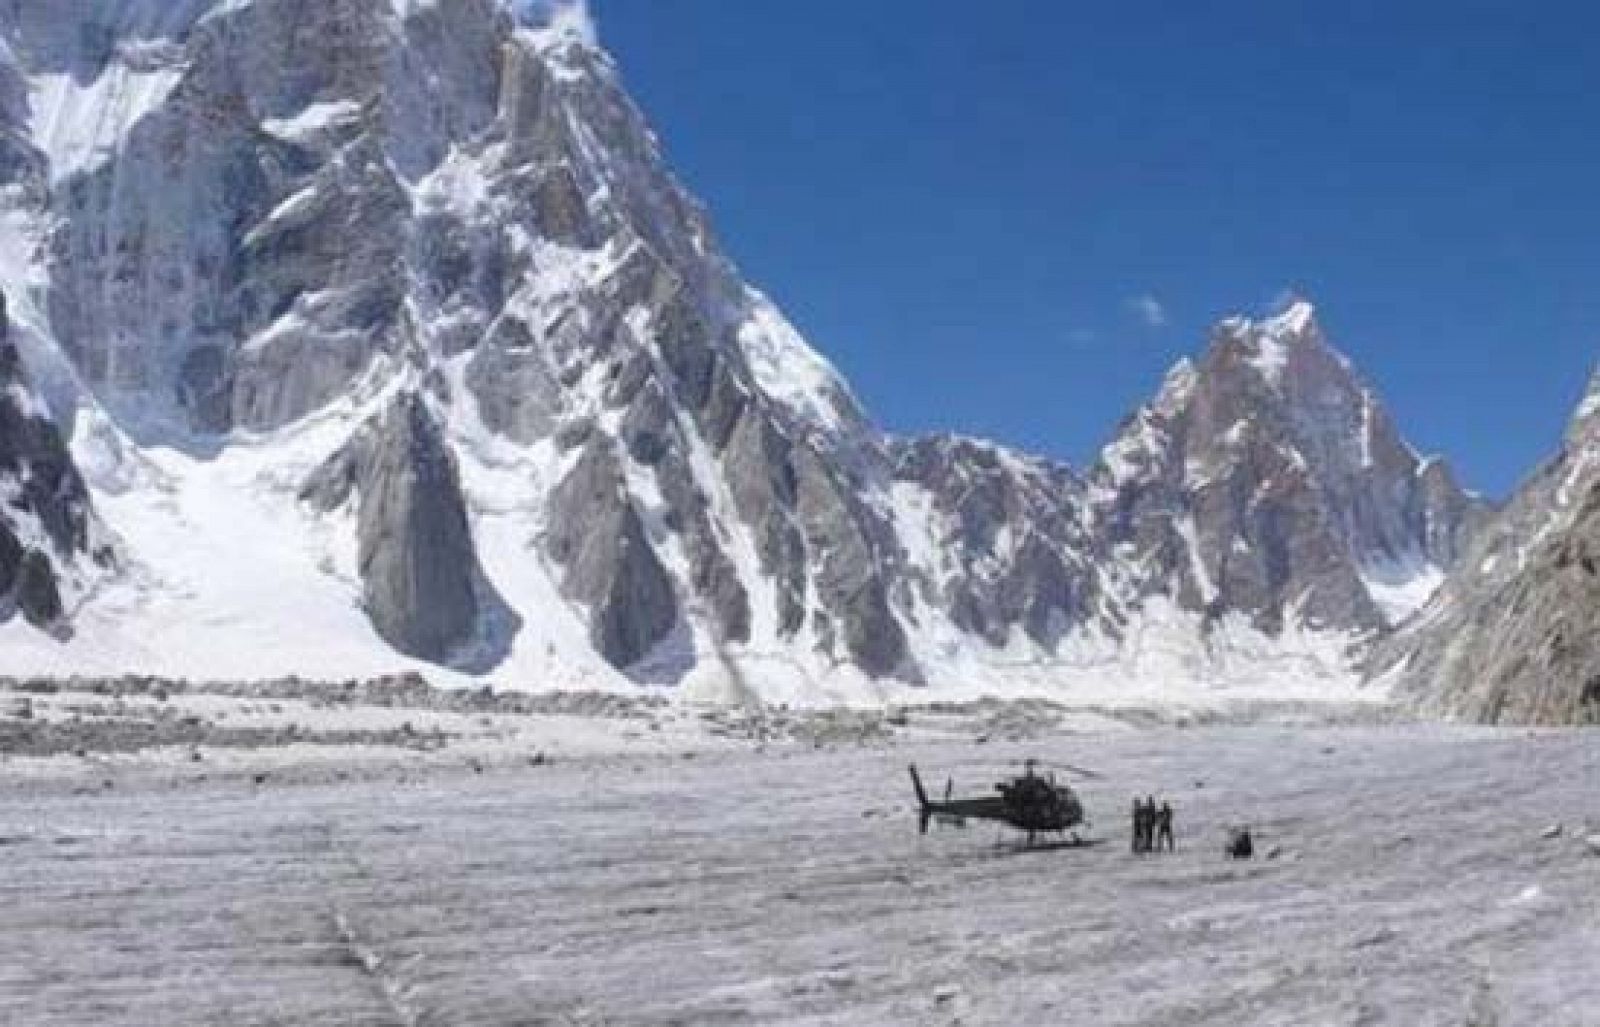 14 alpinistas de varias nacionalidades trabajan en el rescate de Óscar Pérez, el montañista español perido a 6.300 metros de altitud en el Latok II del Karakorum  